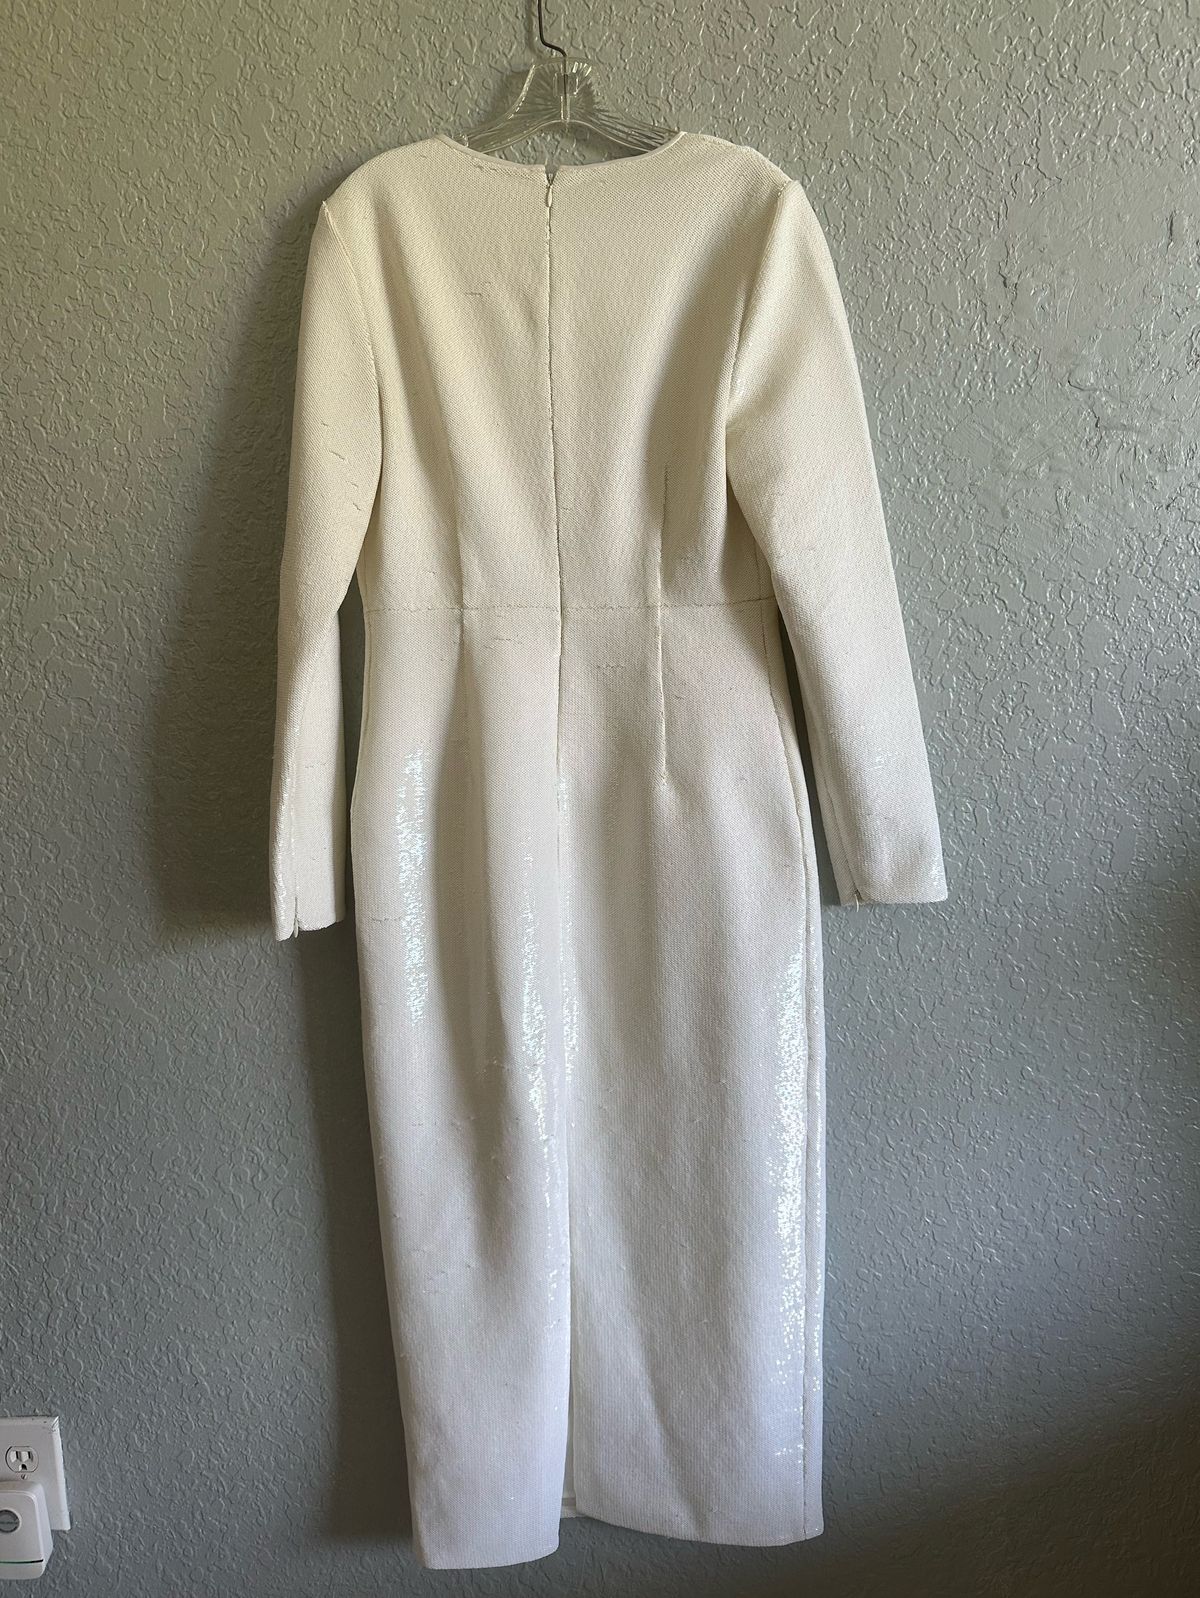 Diane Von Furstenberg Size 10 Prom White A-line Dress on Queenly